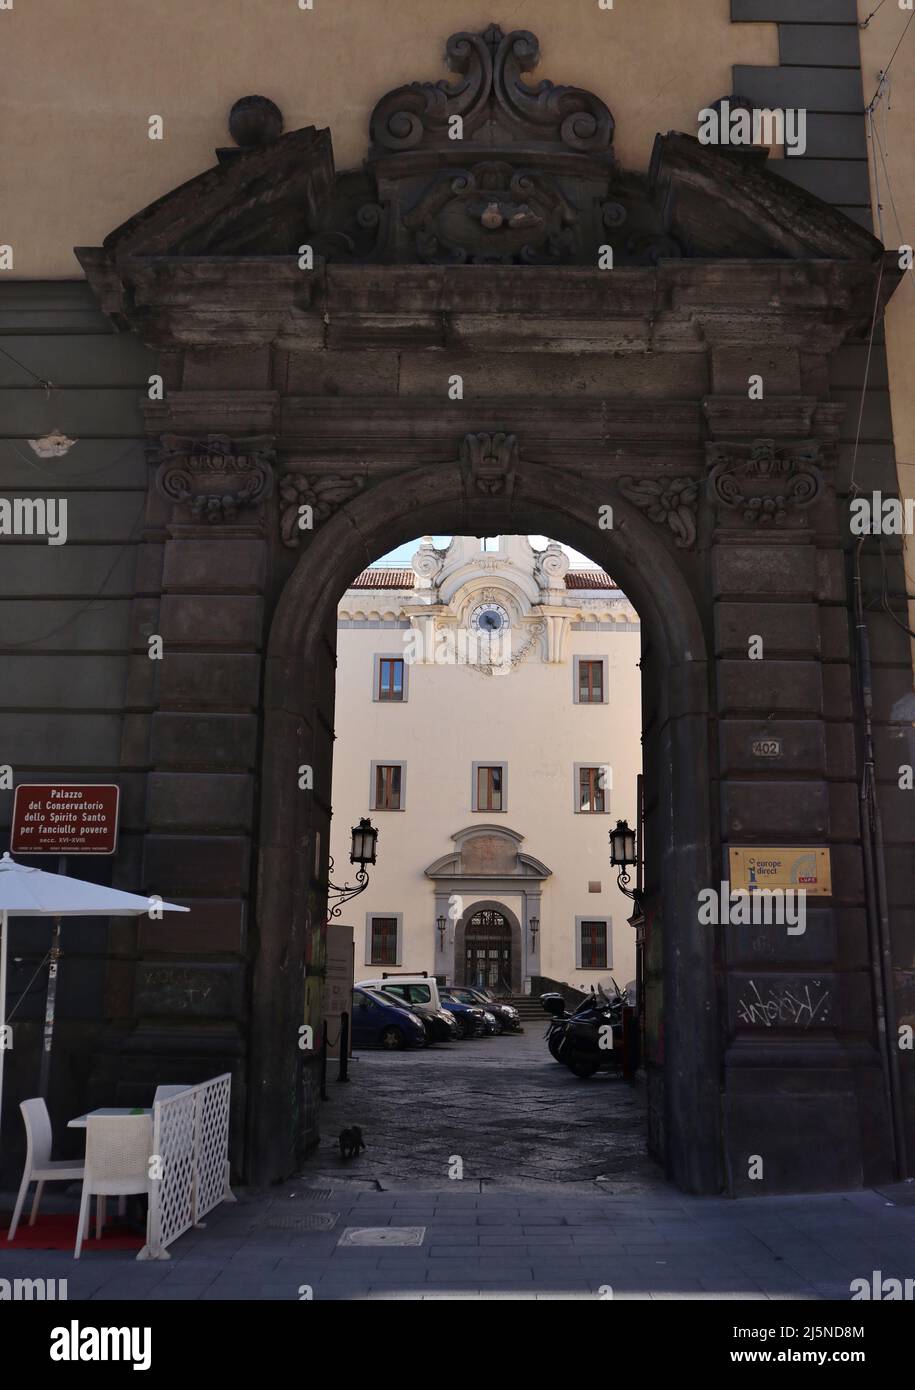 Napoli - Palazzo del Conservatorio dello Spirito Santo per fanciulle povere Stock Photo